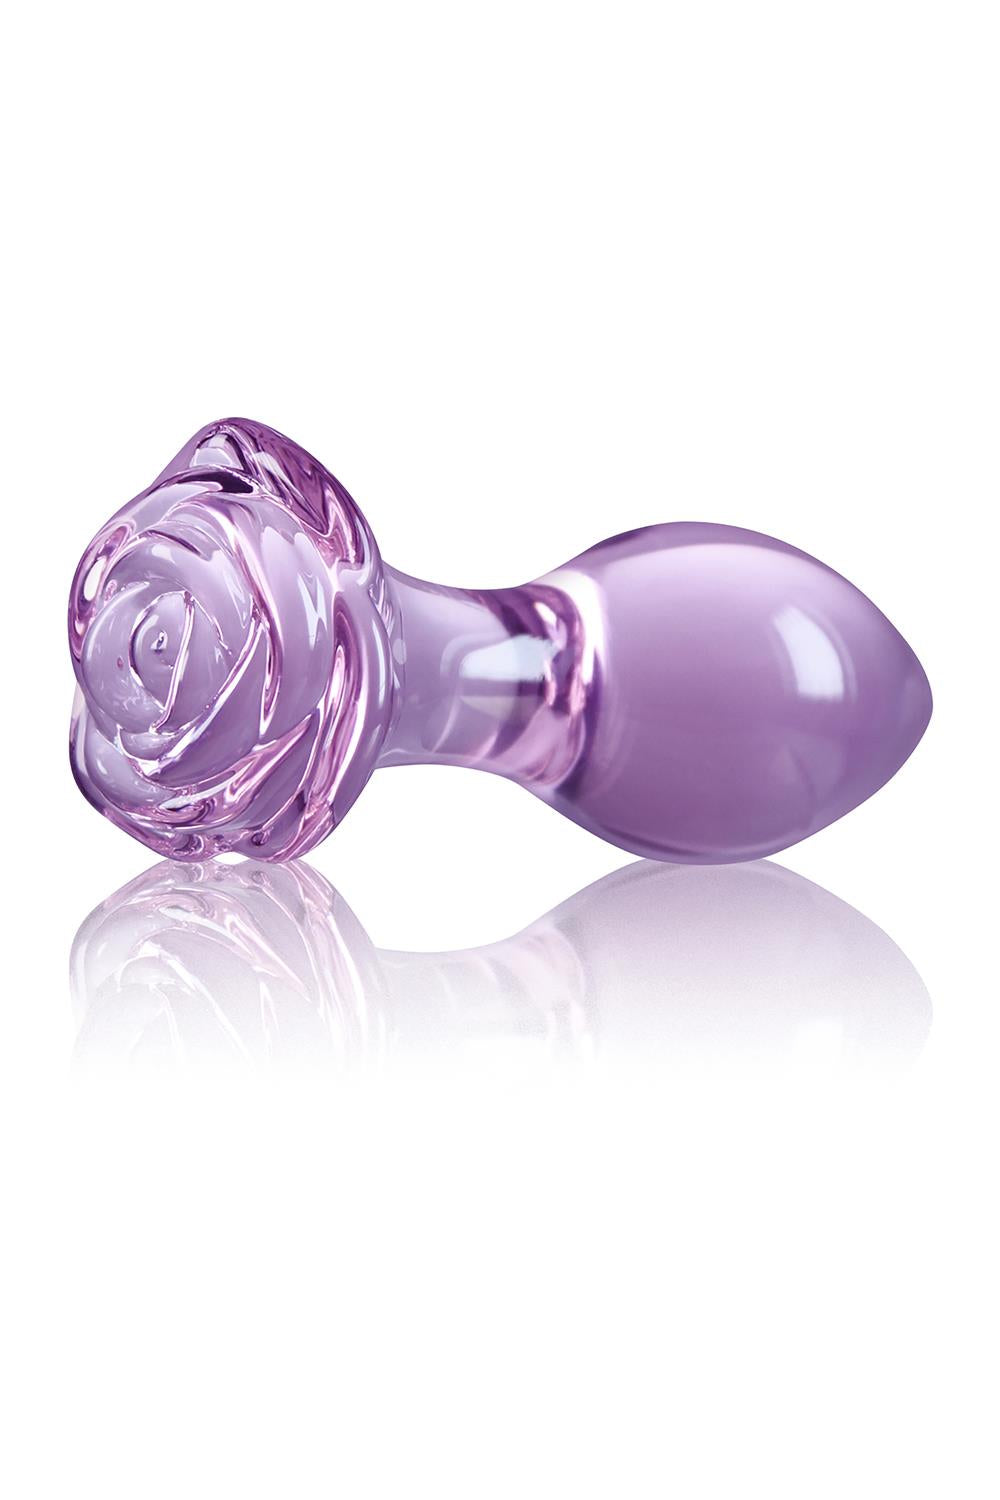 Crystal Rose Purple